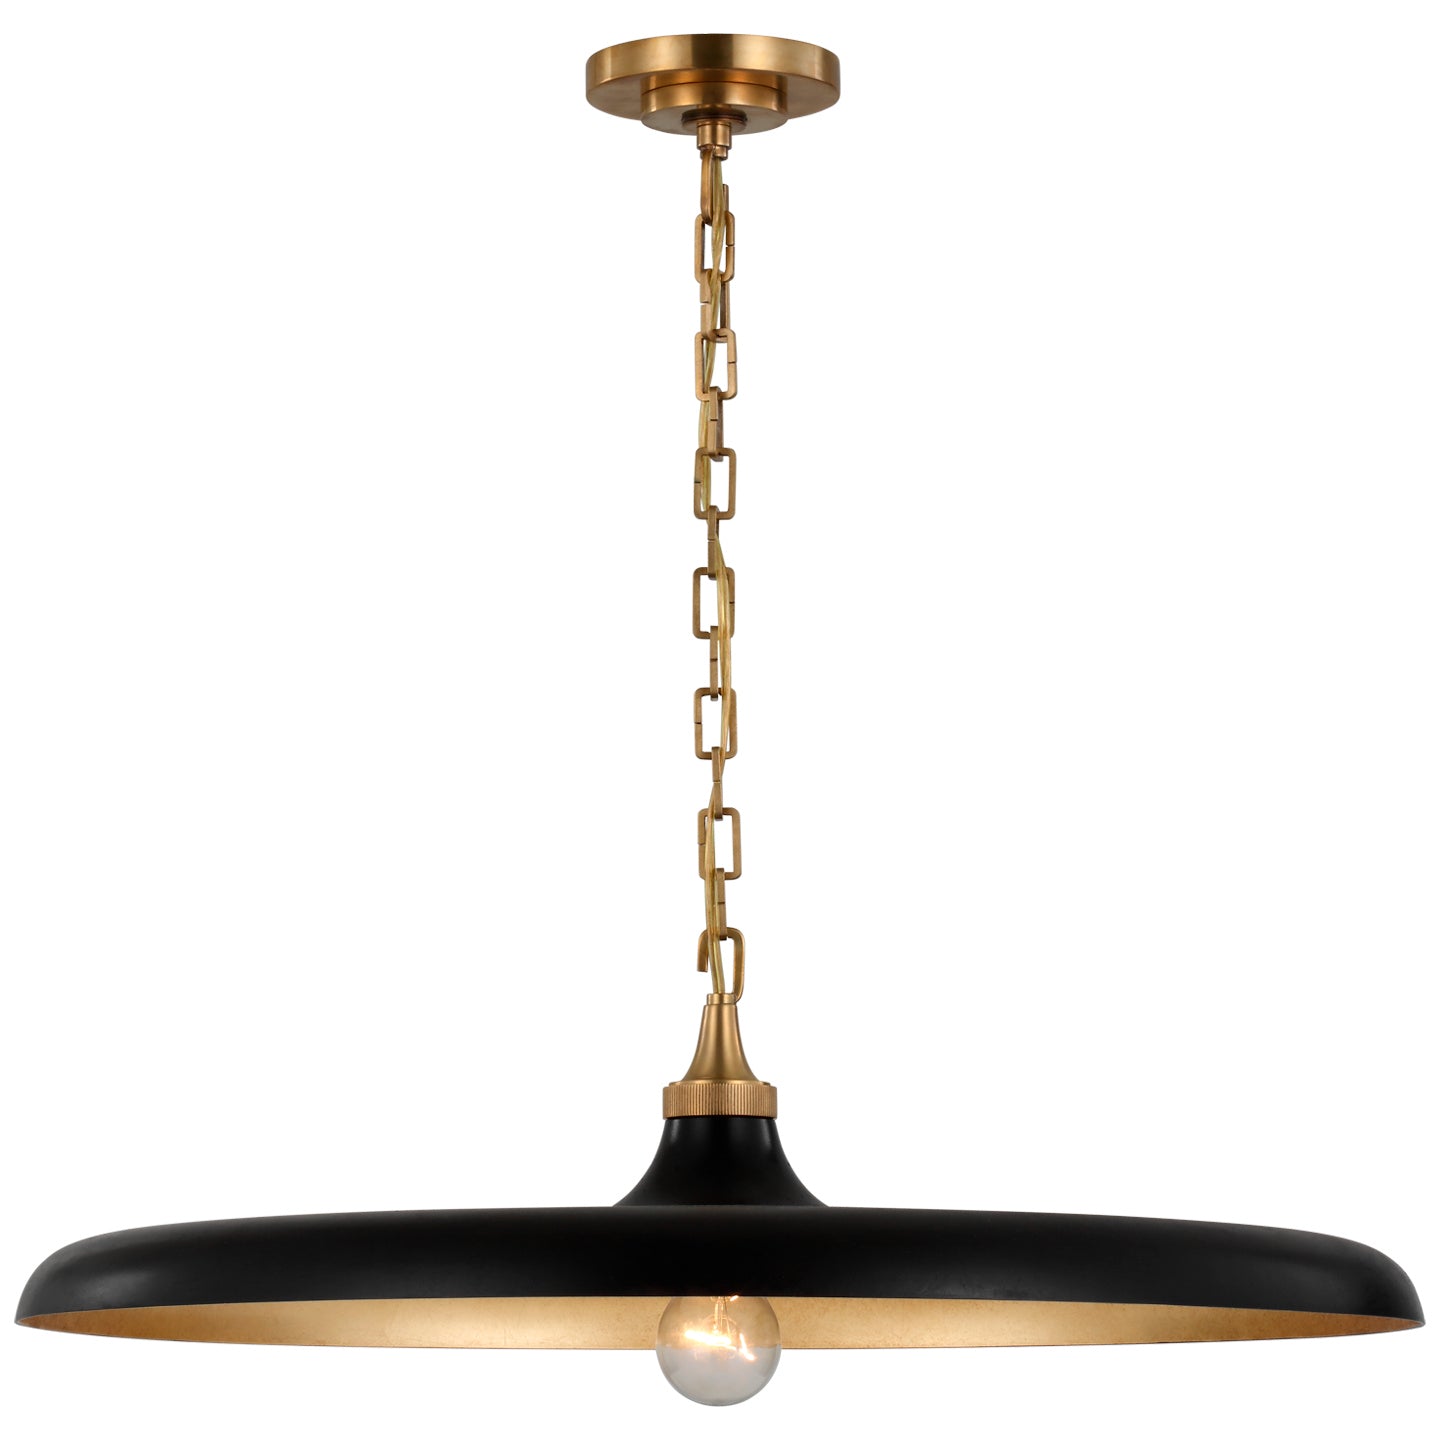 Visual Comfort Signature Canada - LED Pendant - Piatto - Hand-Rubbed Antique Brass- Union Lighting Luminaires Decor